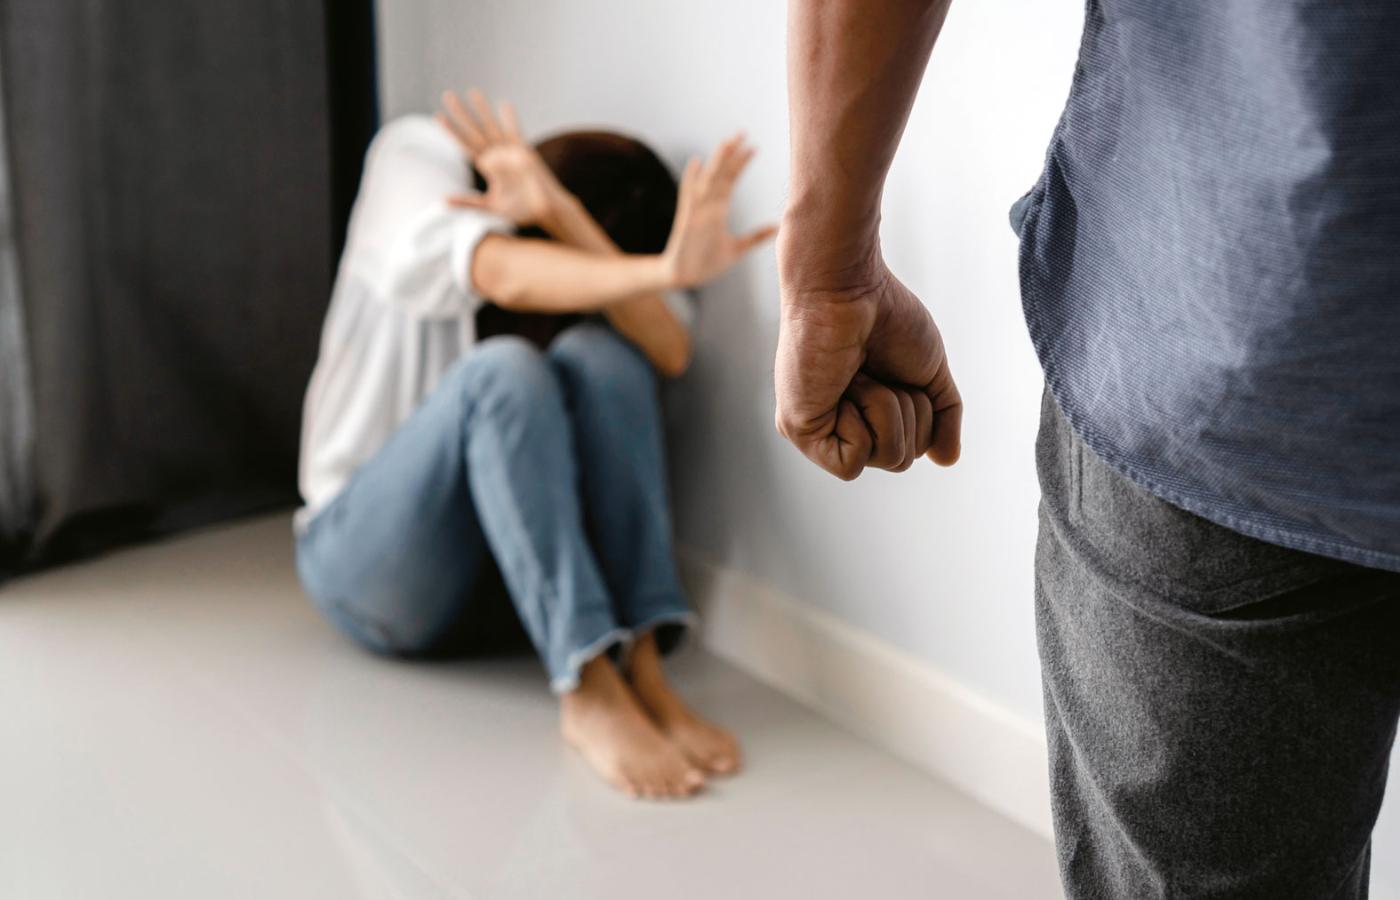 Polacy mieszkający w Wielkiej Brytanii wykazują wysoką akceptację dla przemocy domowej.